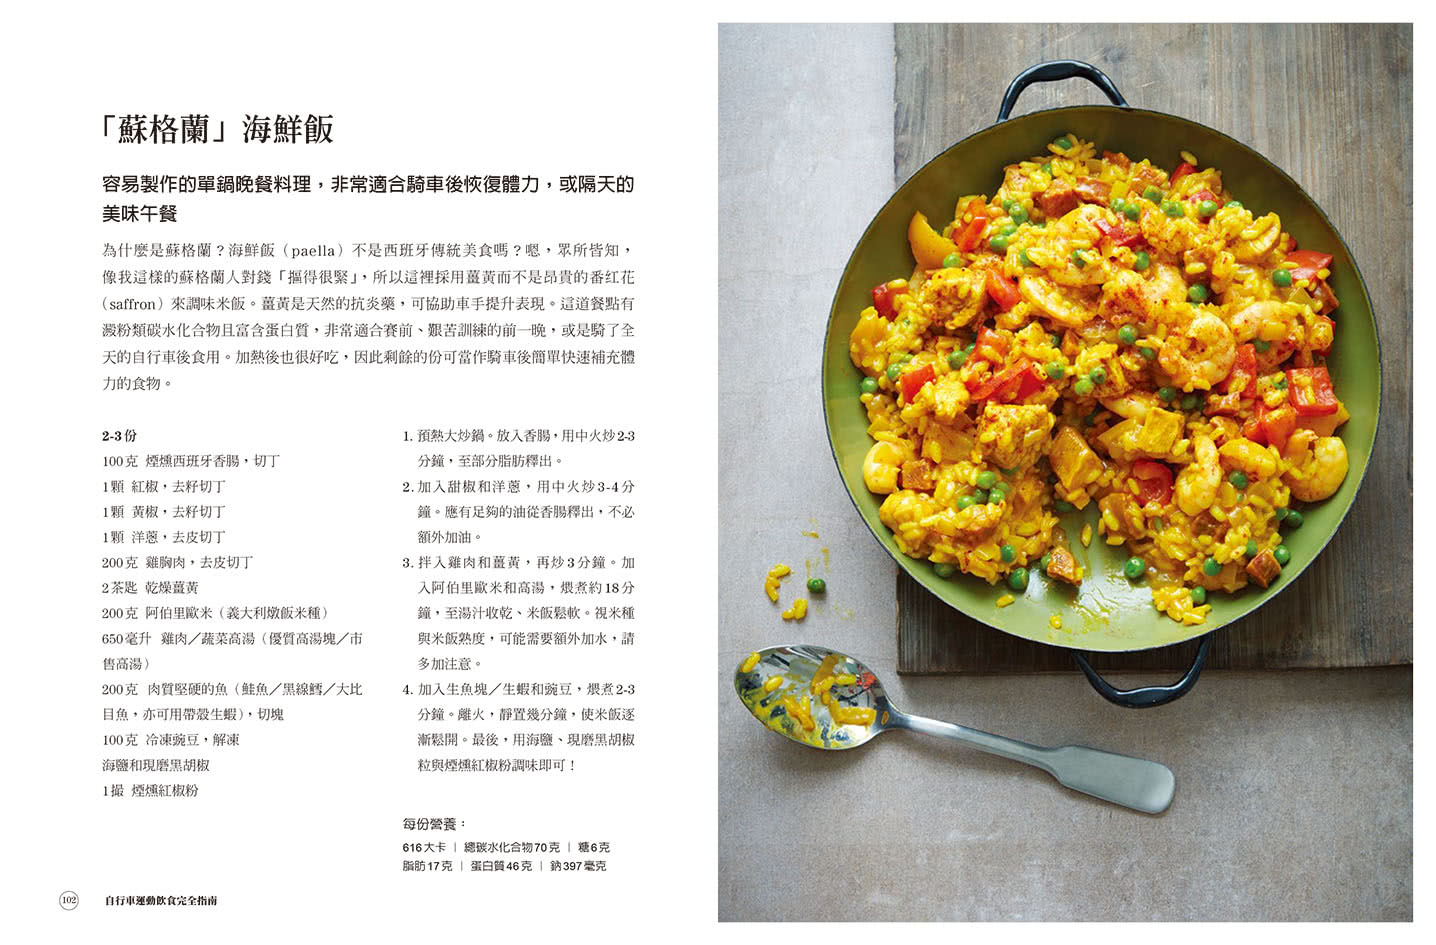 鐵人×自行車 訓練飲食全書：鐵人賽冠軍主廚70道私房食譜+7大營養法則打造個人化菜單